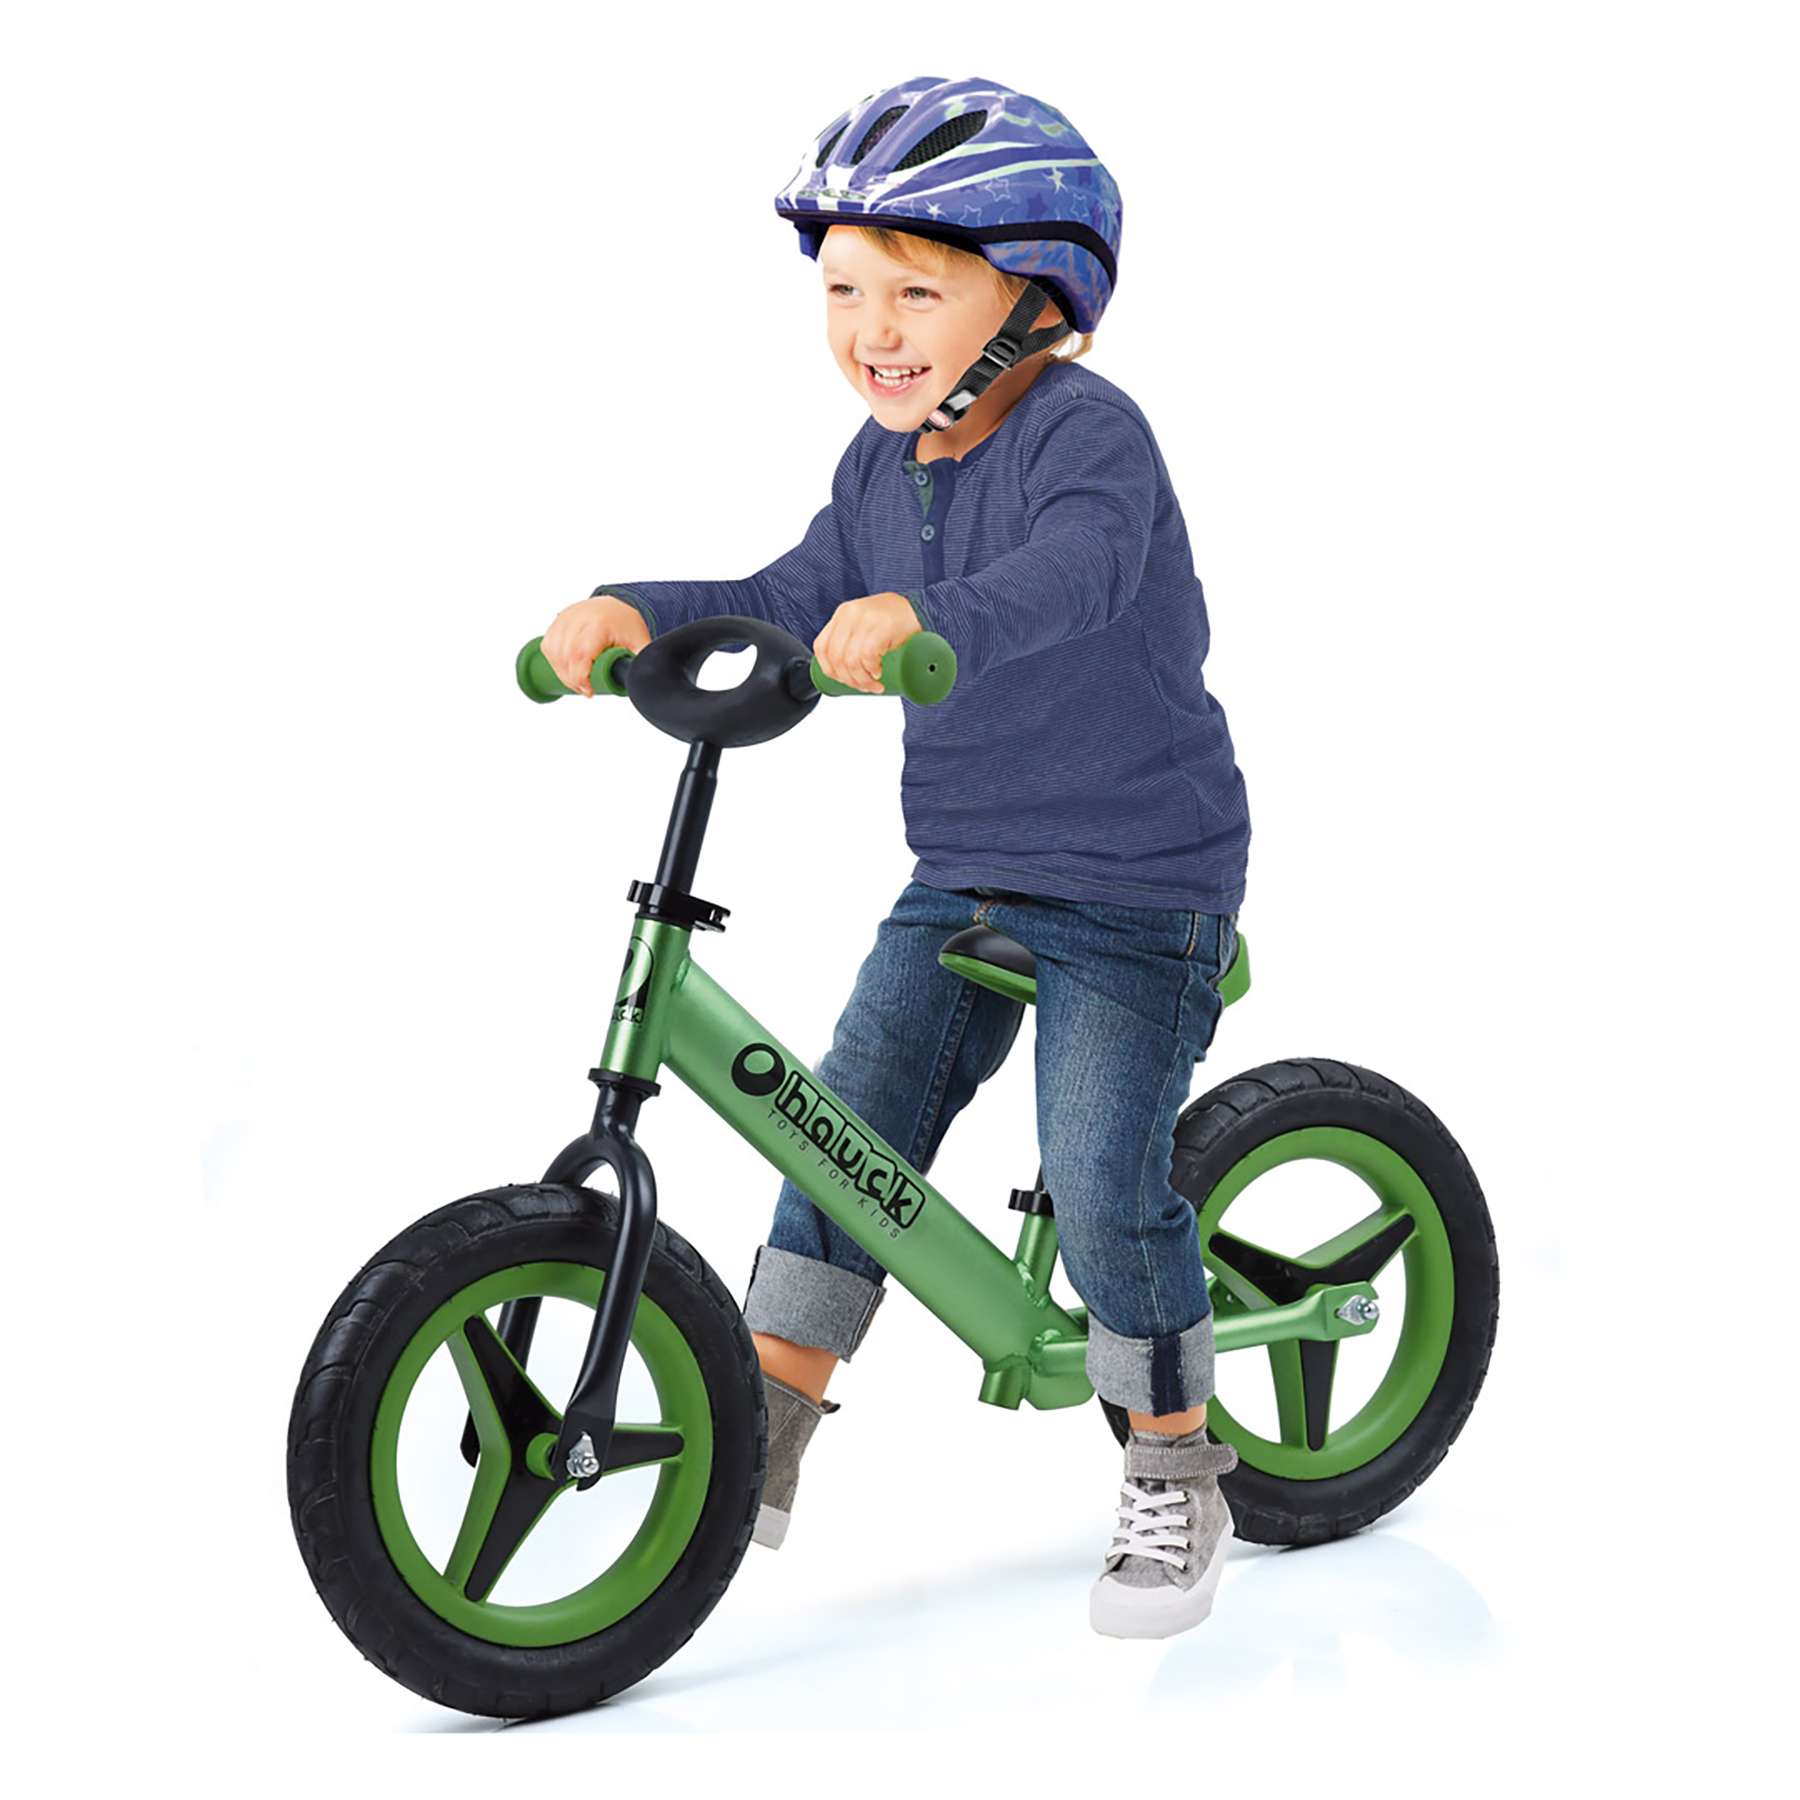 Hauck Aluminum Rider Balance Bike- Green - image 3 of 4